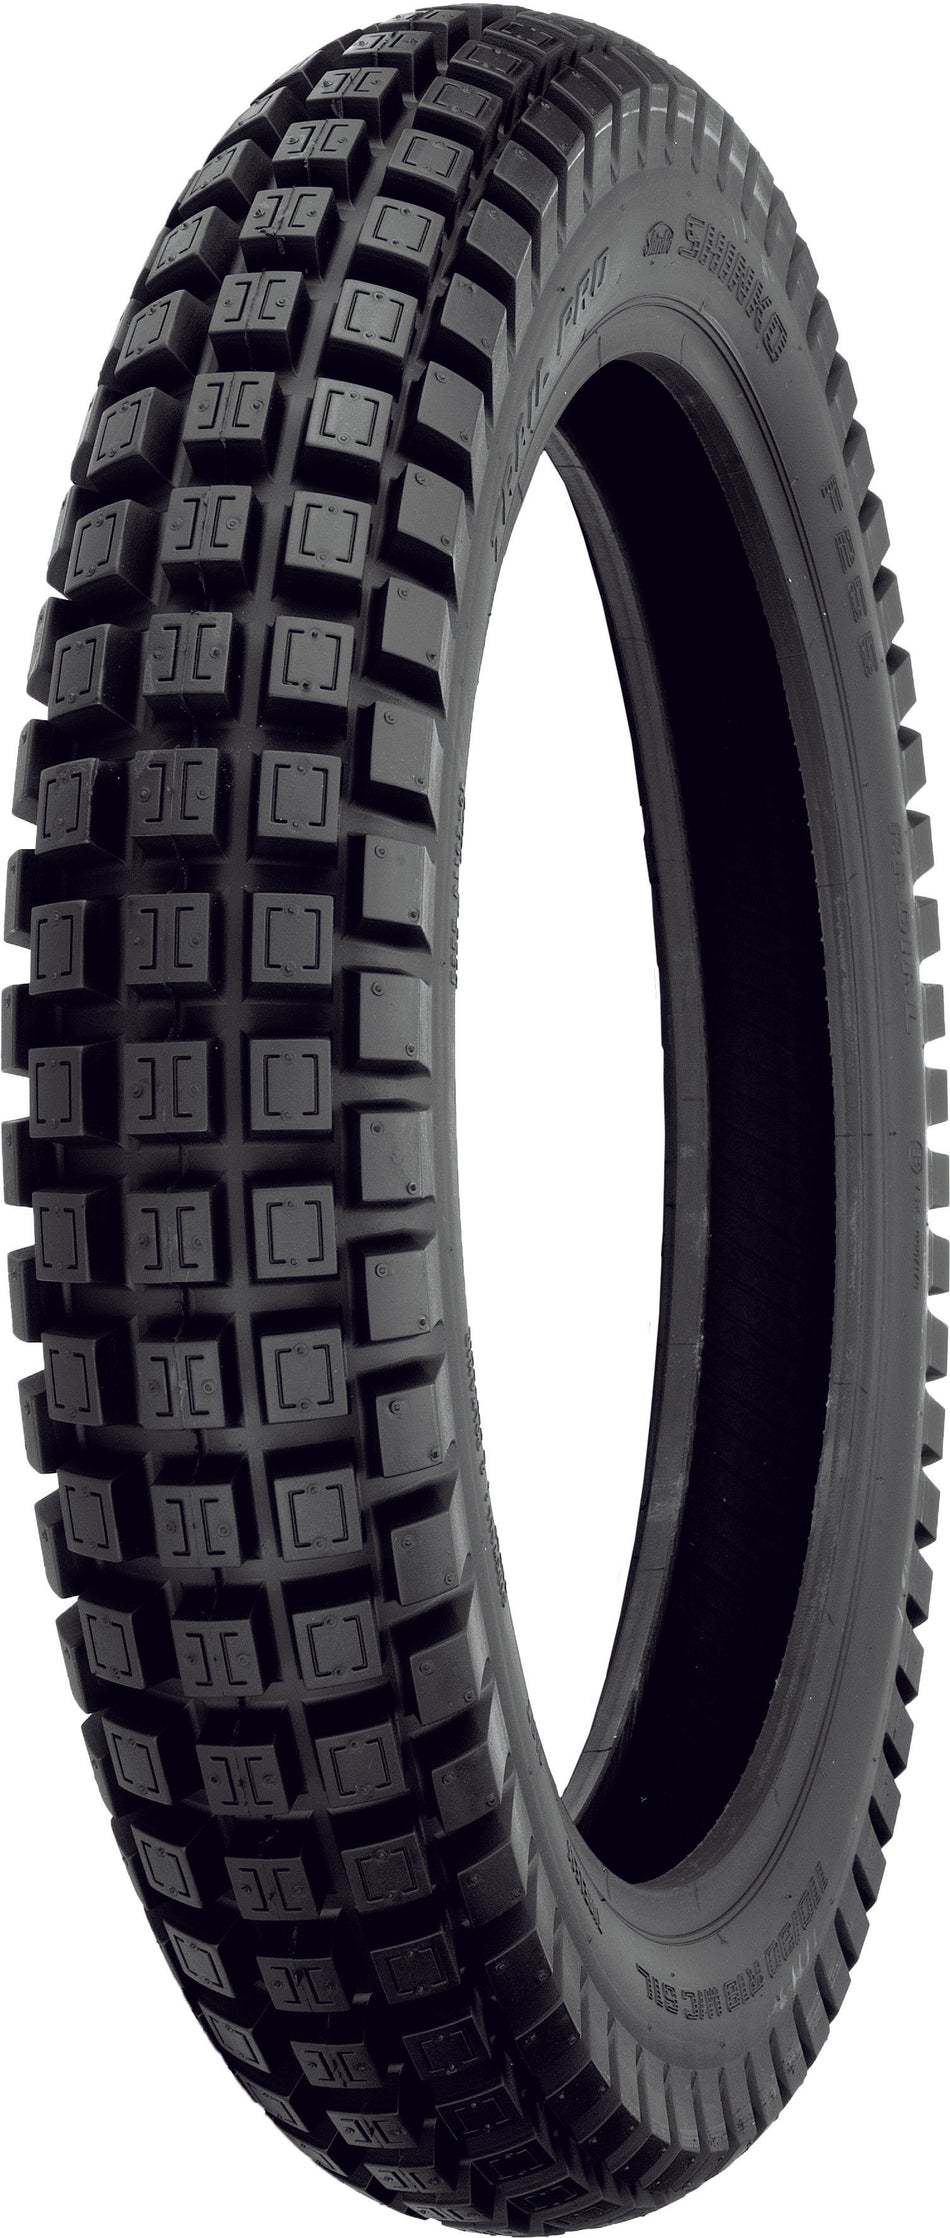 SHINKO Tire 255 Trail Pro Rear 110/90r18 61l Radial Tl 110/90R18 F255